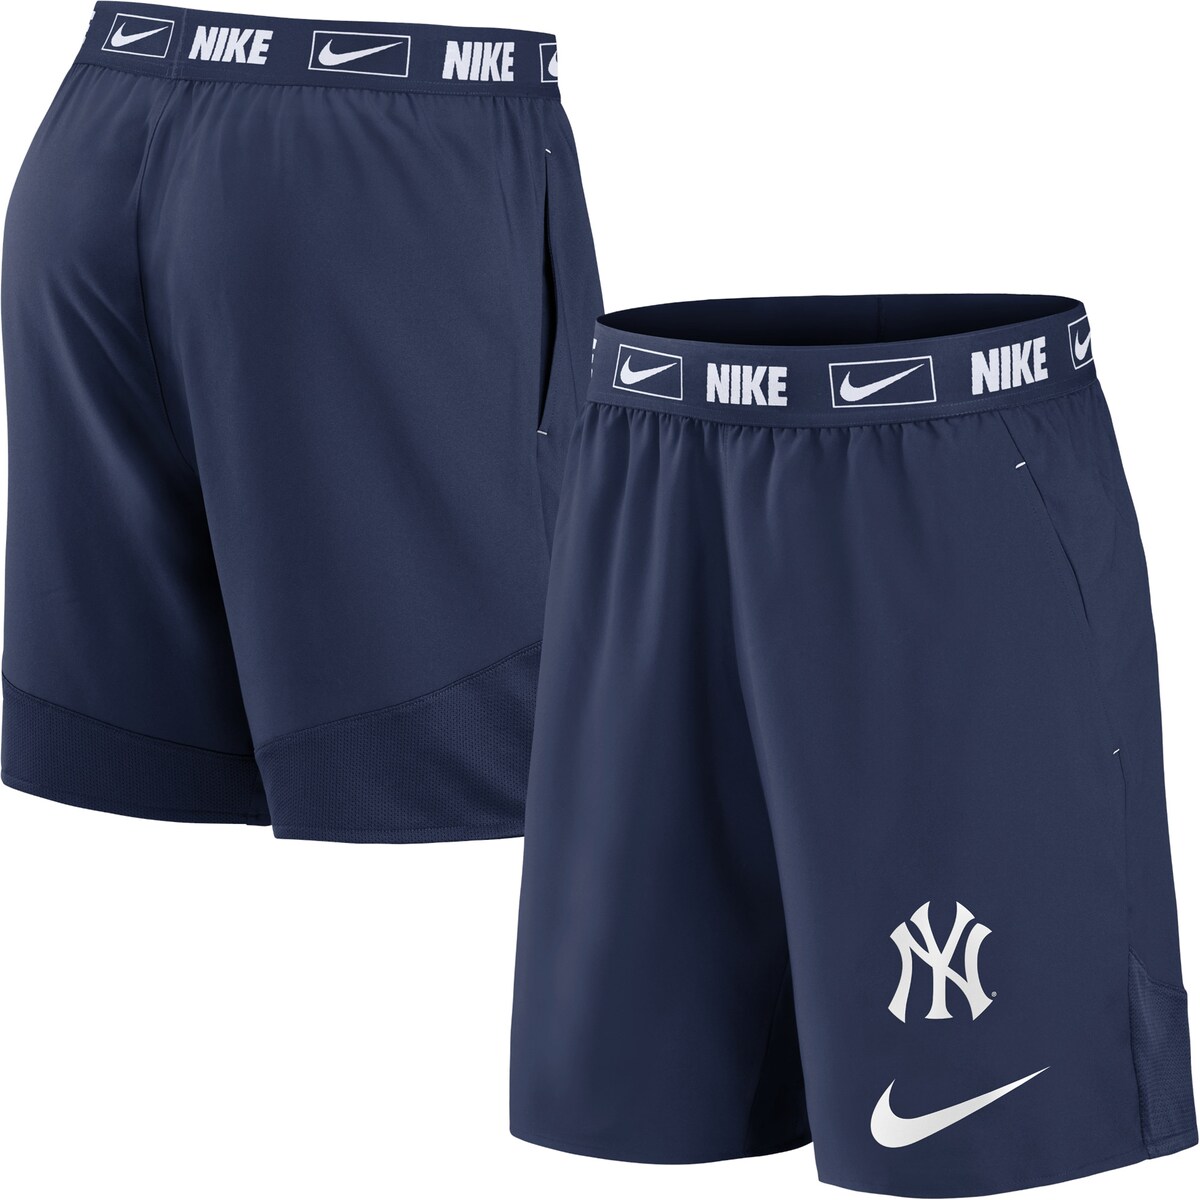 楽天市場】MLB ヤンキース カジュアル ショーツ Nike ナイキ メンズ